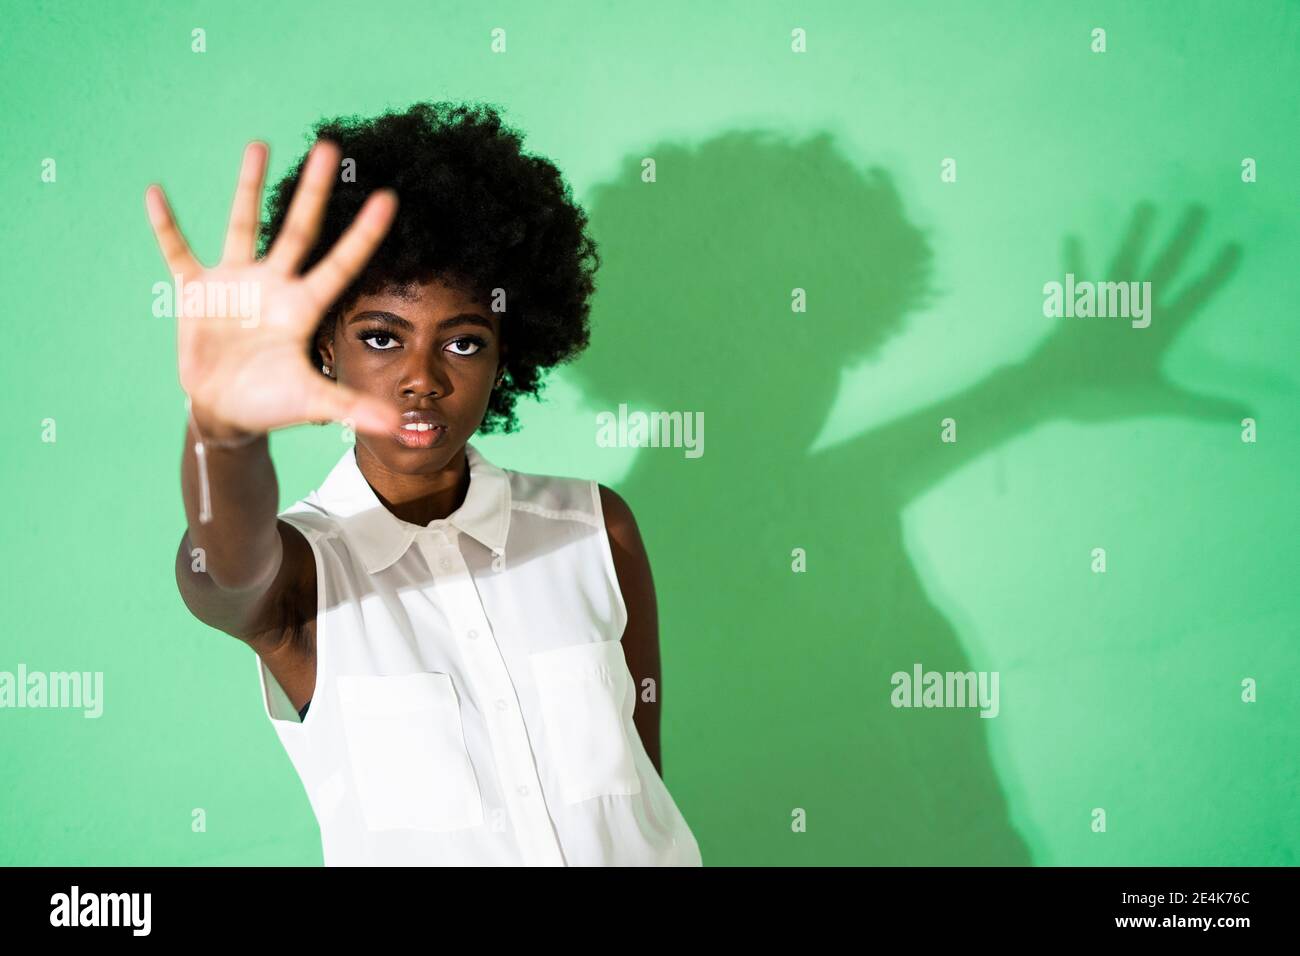 Lockiges Haar Frau zeigt Stop-Geste, während sie gegen grün steht Hintergrund Stockfoto